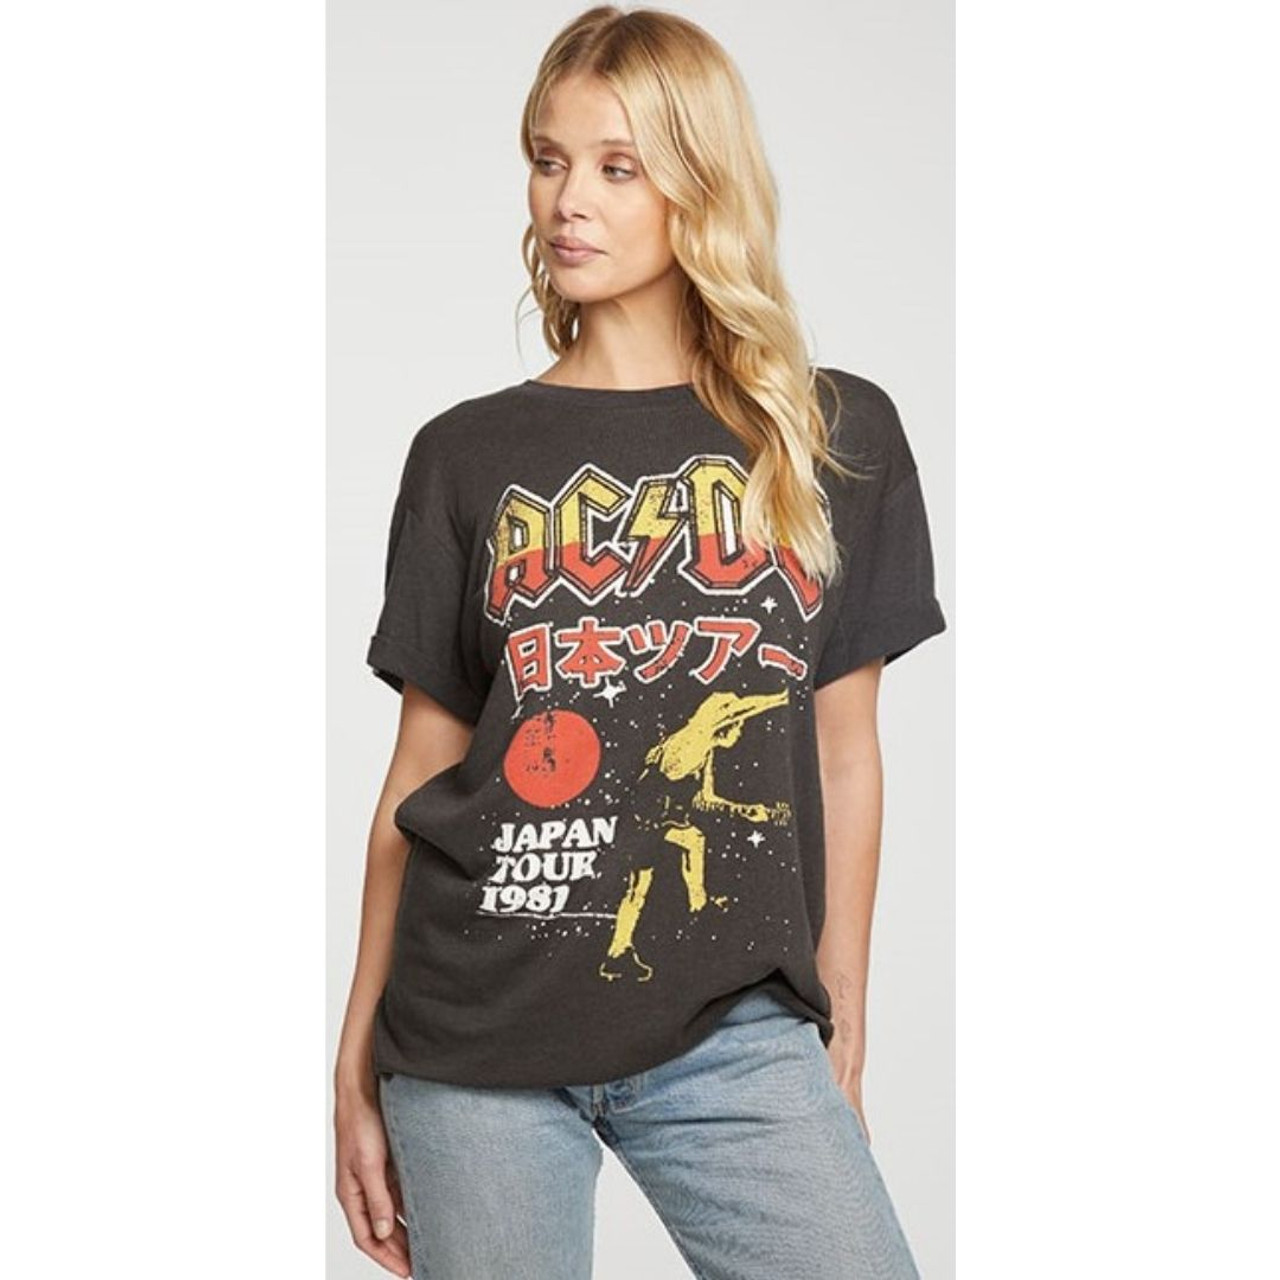 Rock On Lets Rock Concert Band Tees Vintage T-Shirt 